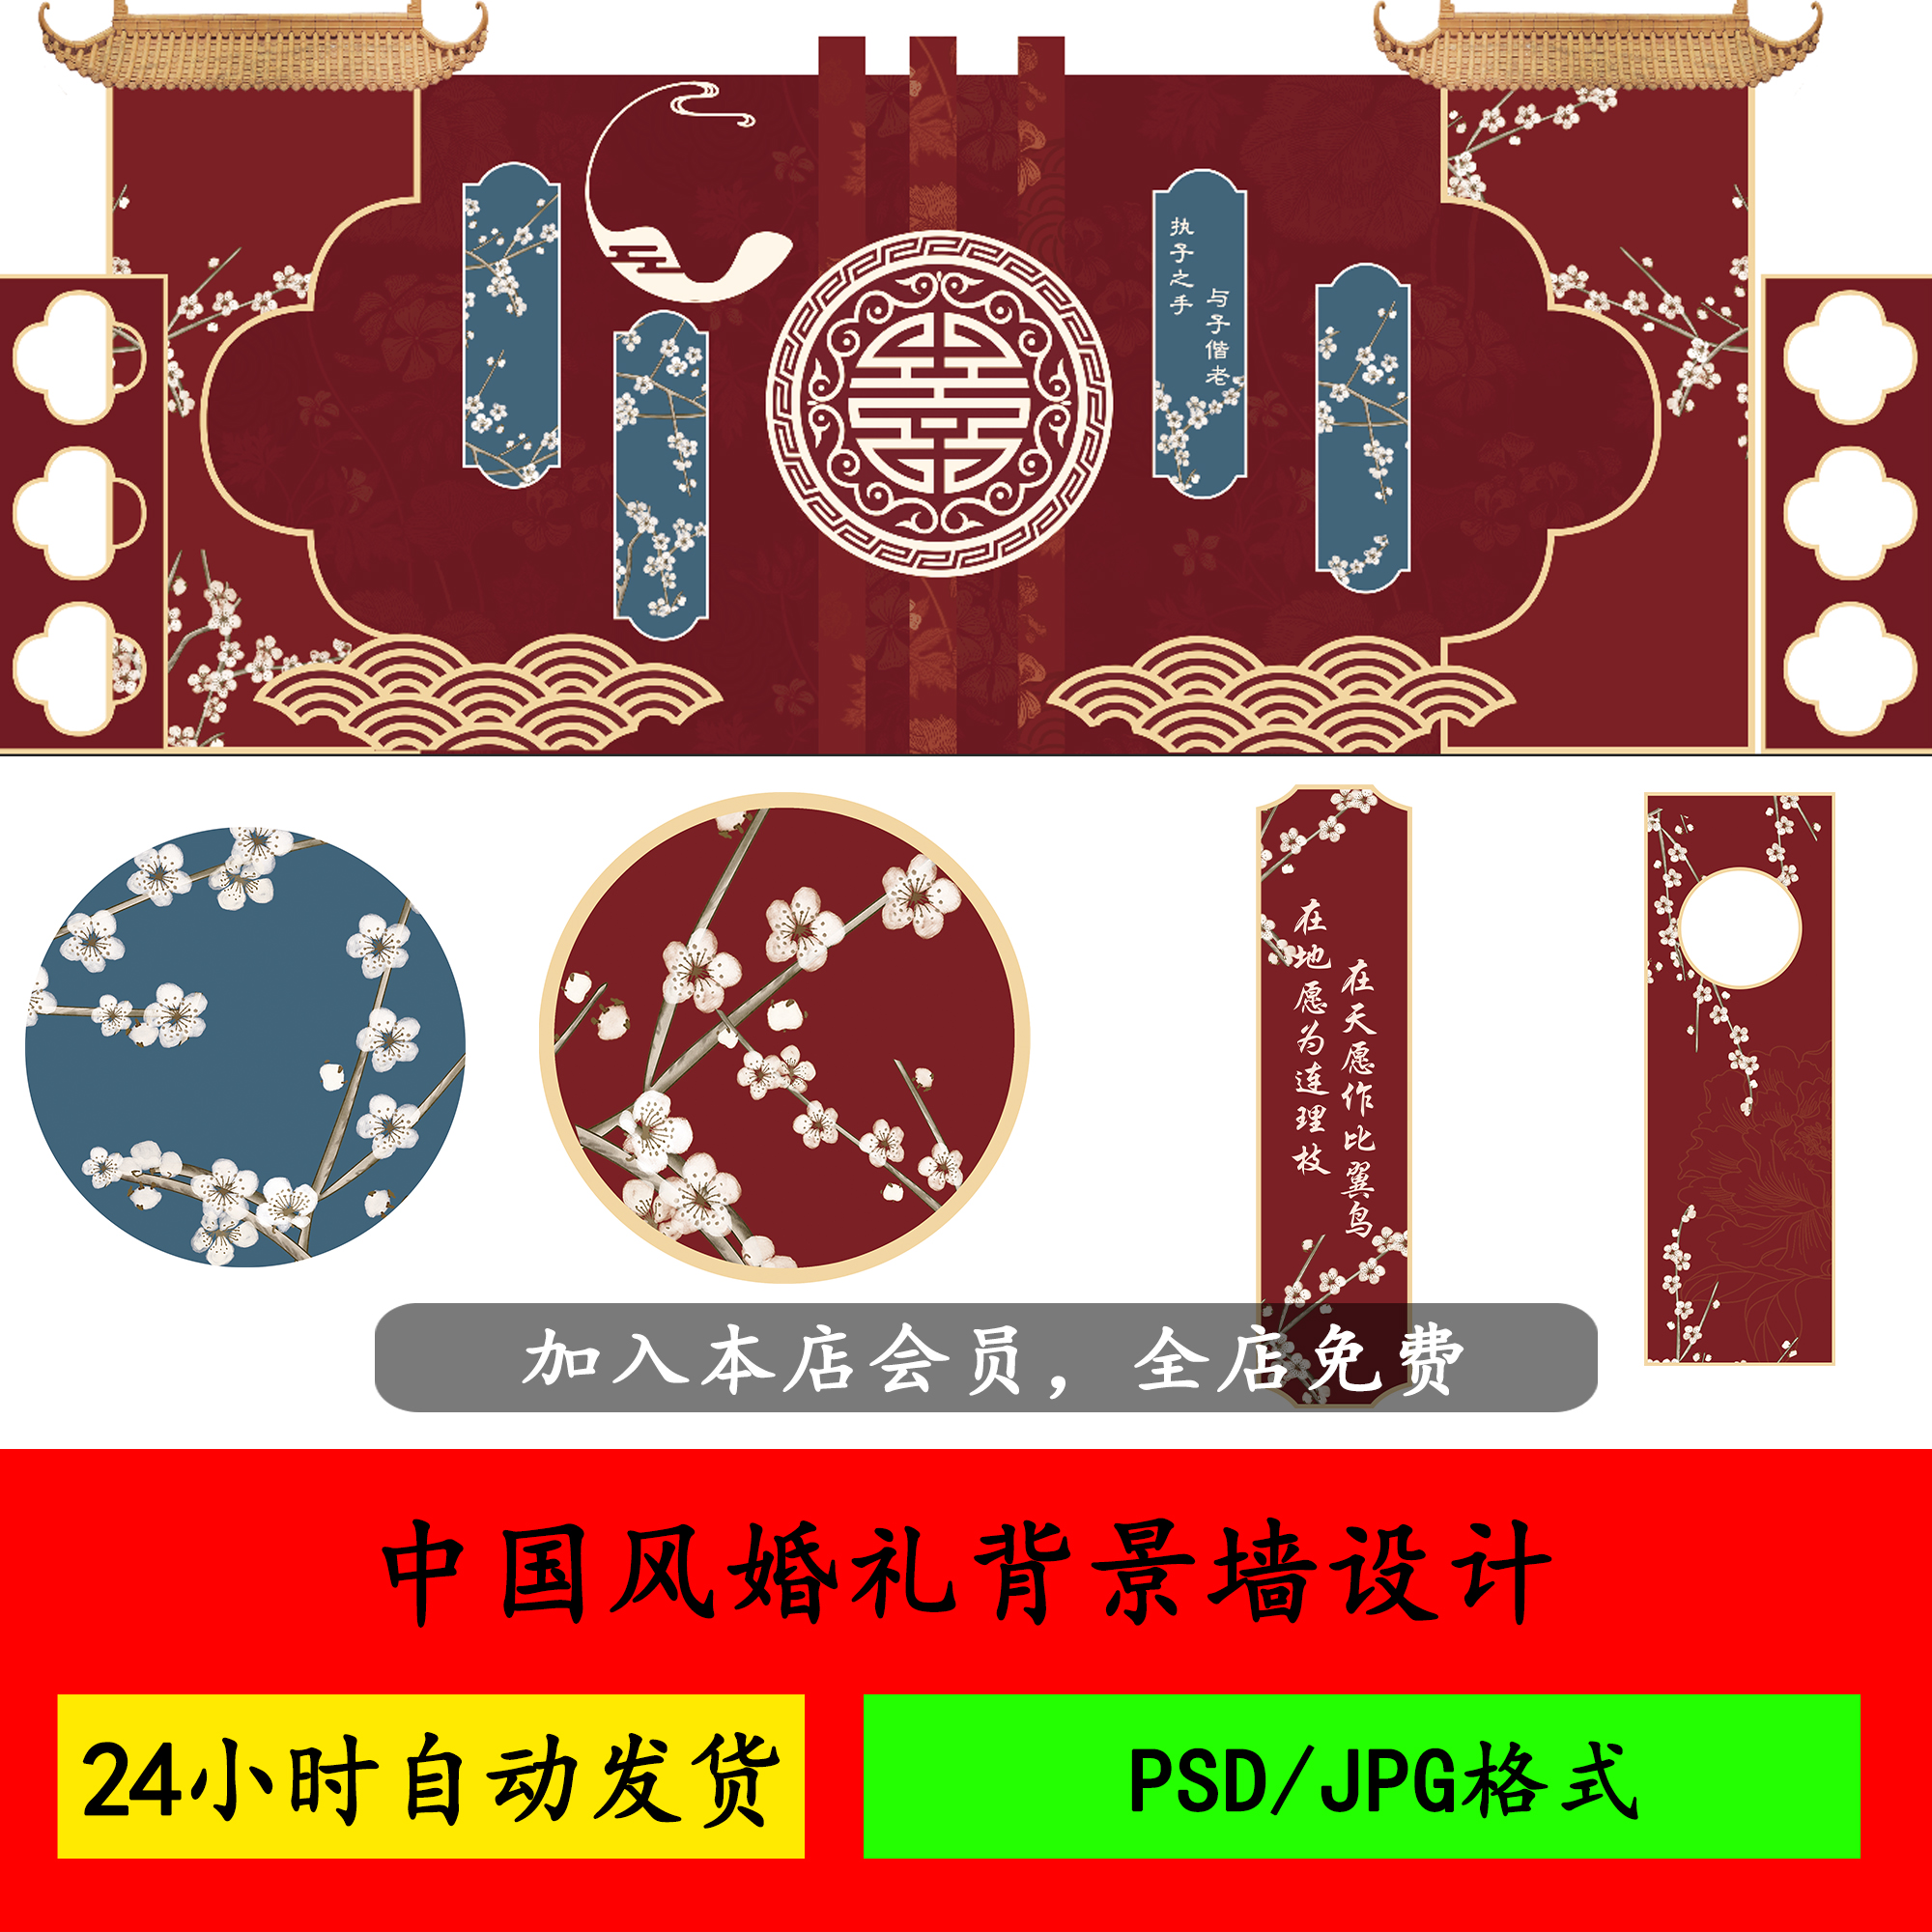 红色新中式中国风婚礼背景墙设计 迎宾签到区效果图源素材PSD模板